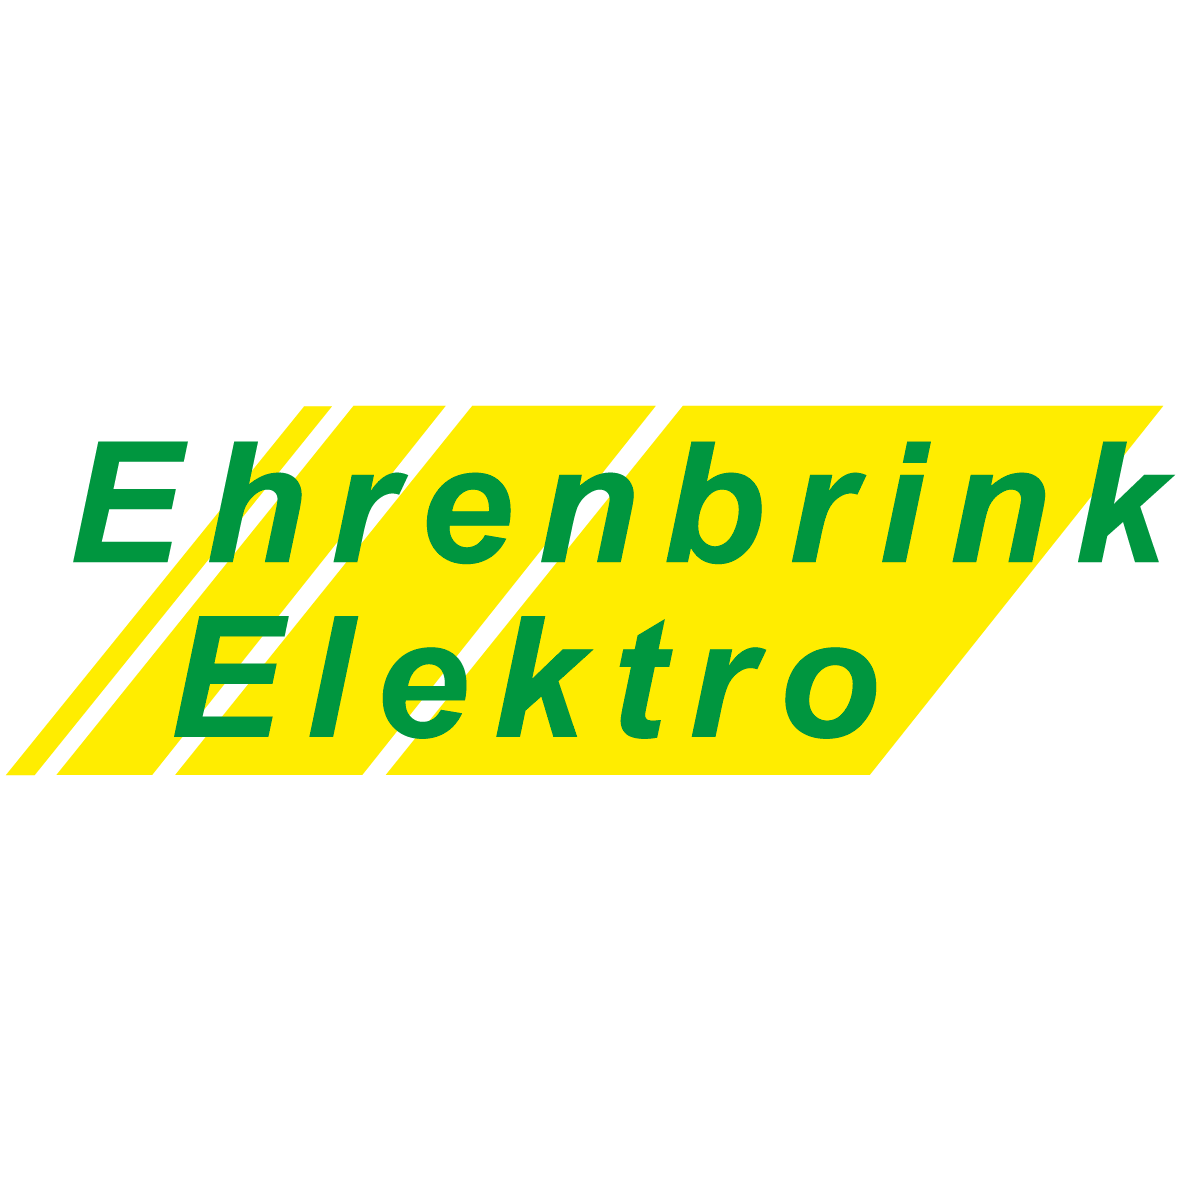 Ehrenbrink Elektro Logo